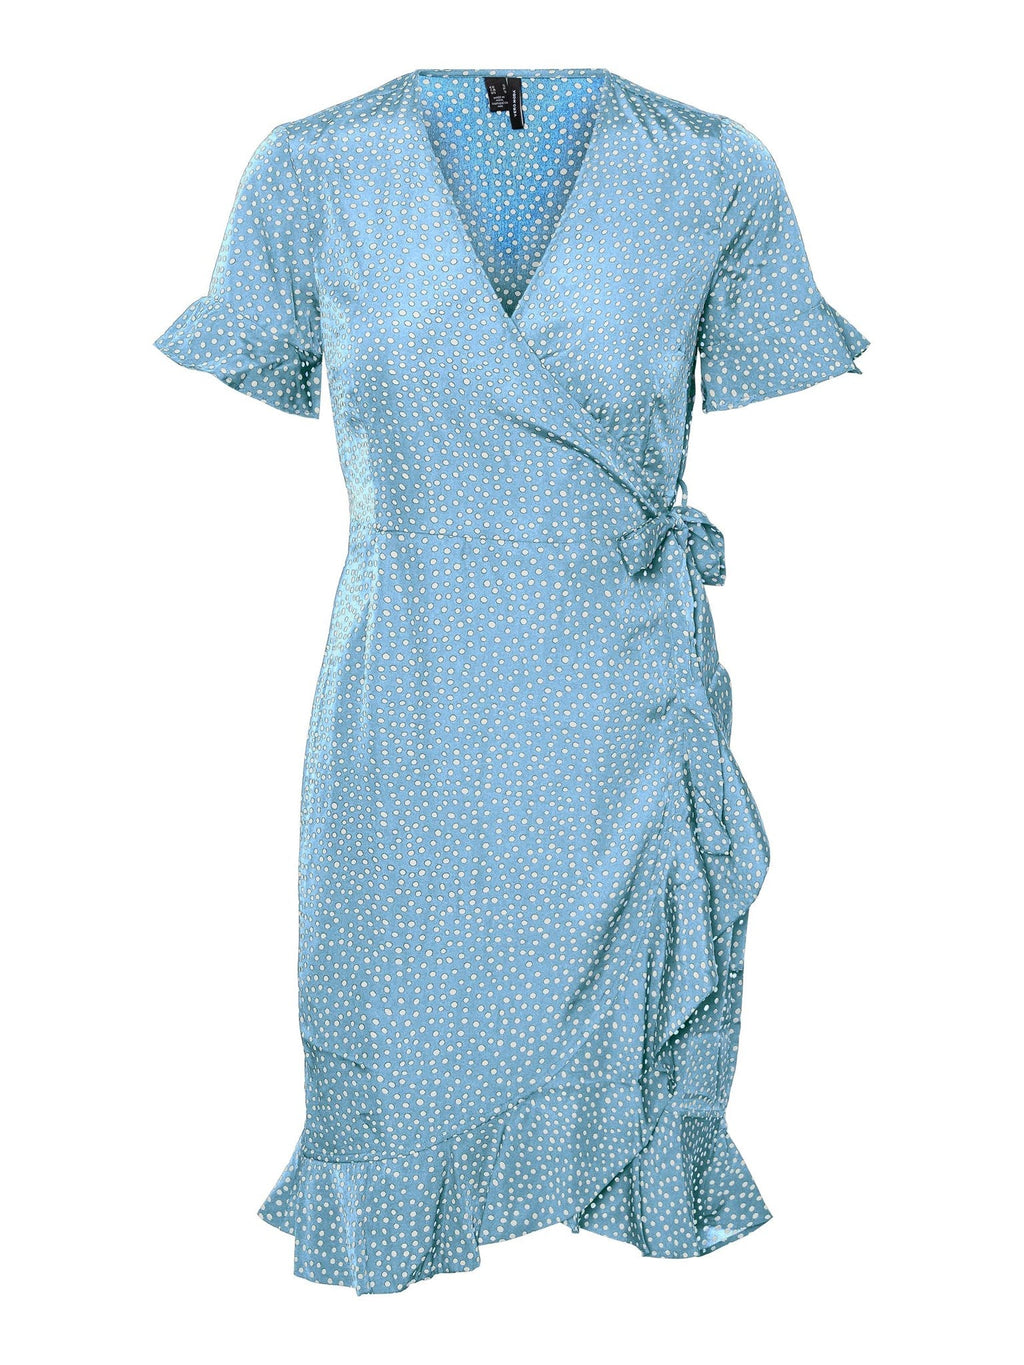 Kana 2/4 haljina za omot - plavo zvono